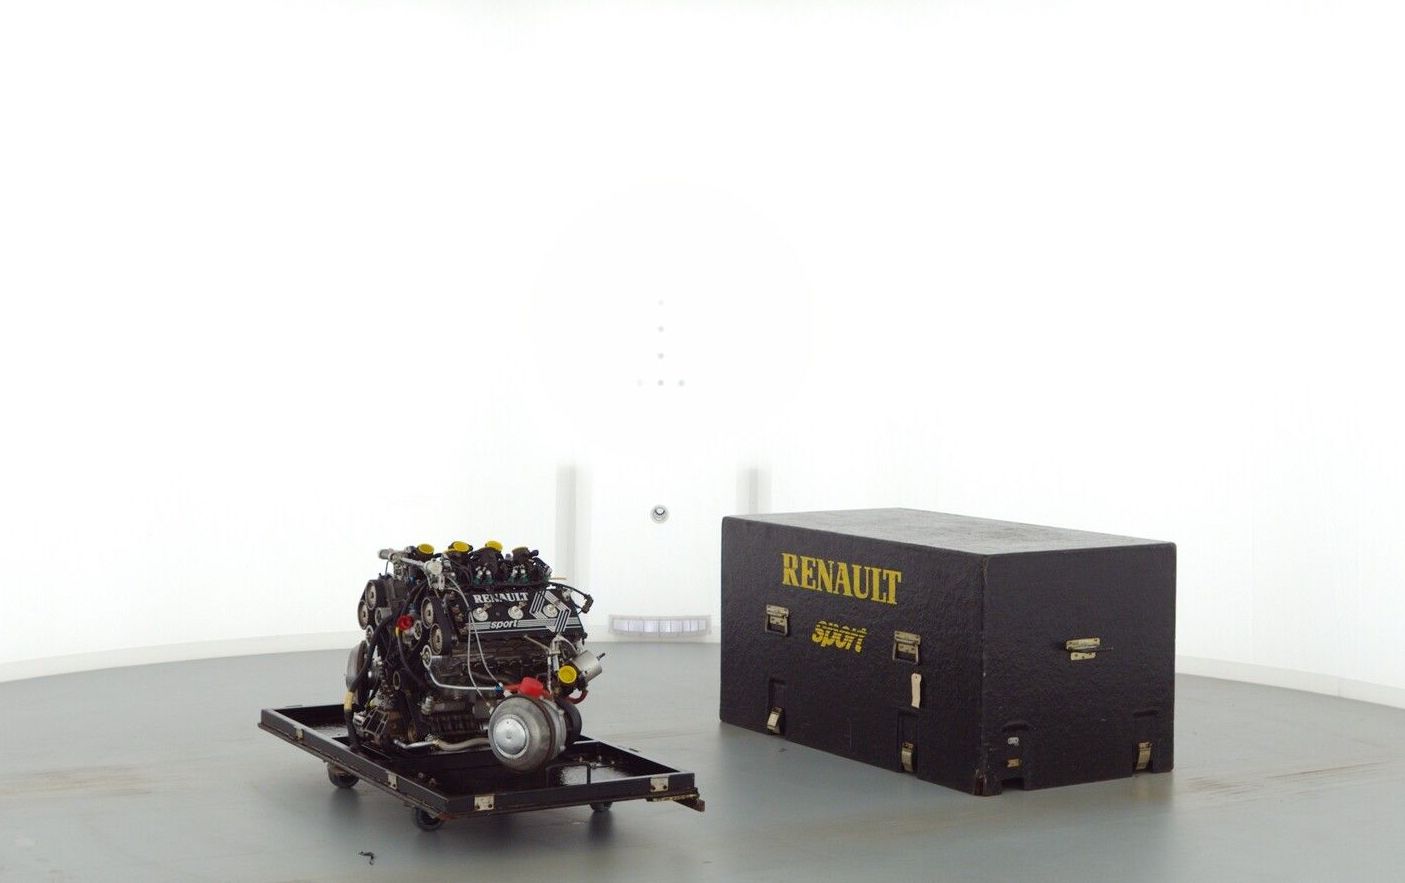 Eladó egy érintetlen Renault F1-es motor a hőskorból 1